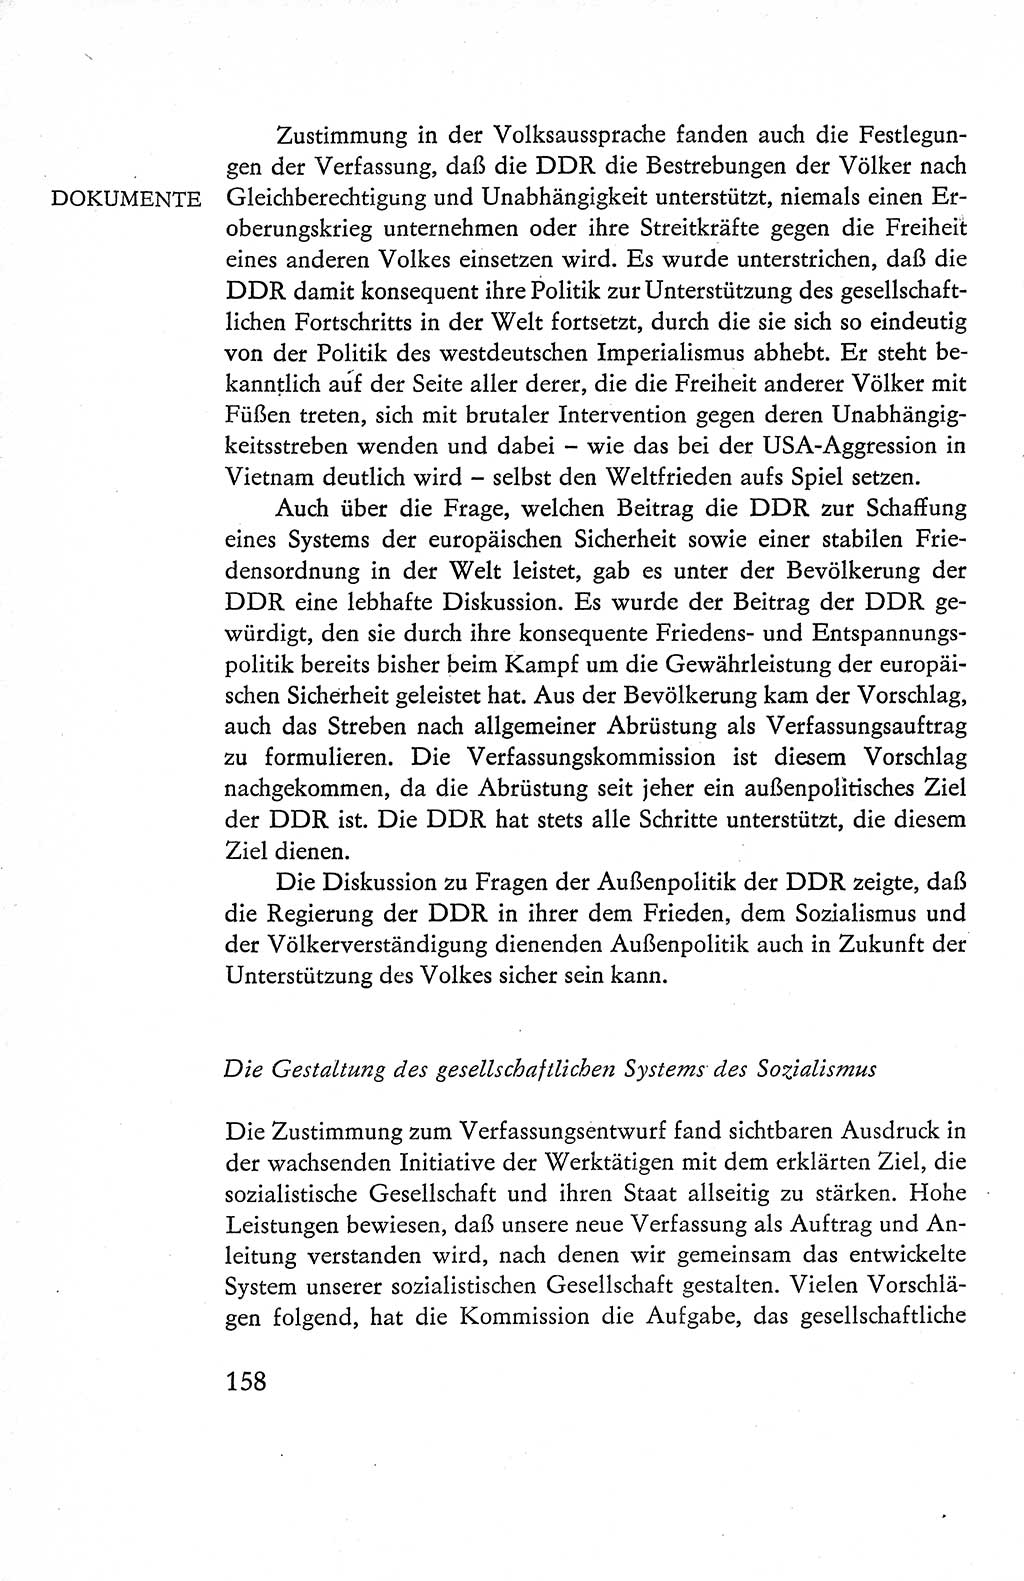 Verfassung der Deutschen Demokratischen Republik (DDR), Dokumente, Kommentar 1969, Band 1, Seite 158 (Verf. DDR Dok. Komm. 1969, Bd. 1, S. 158)